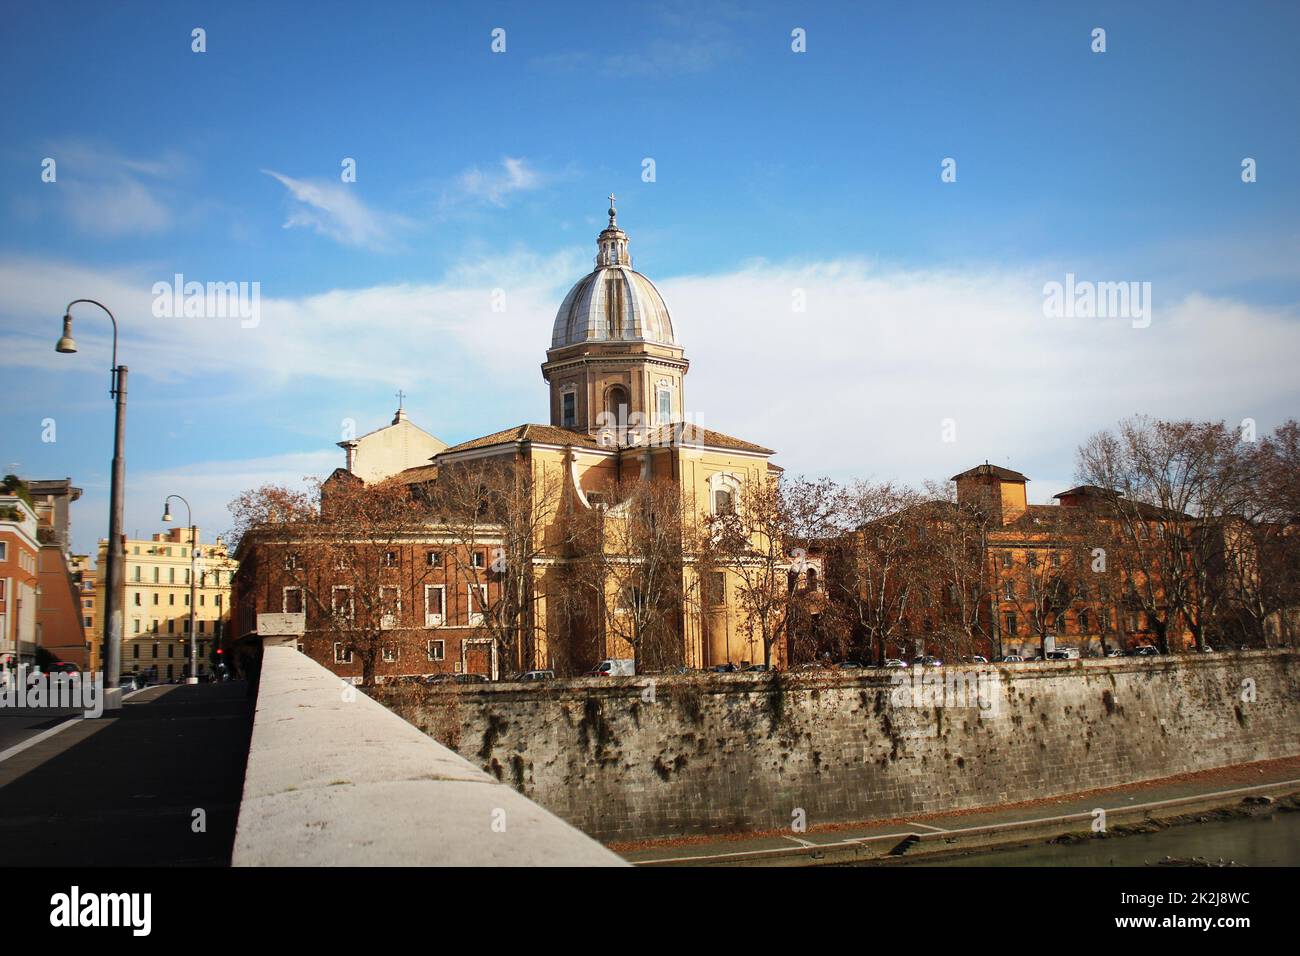 Exterior view of San Giovanni Battista dei Fiorentini church at Rome city, Italy Stock Photo